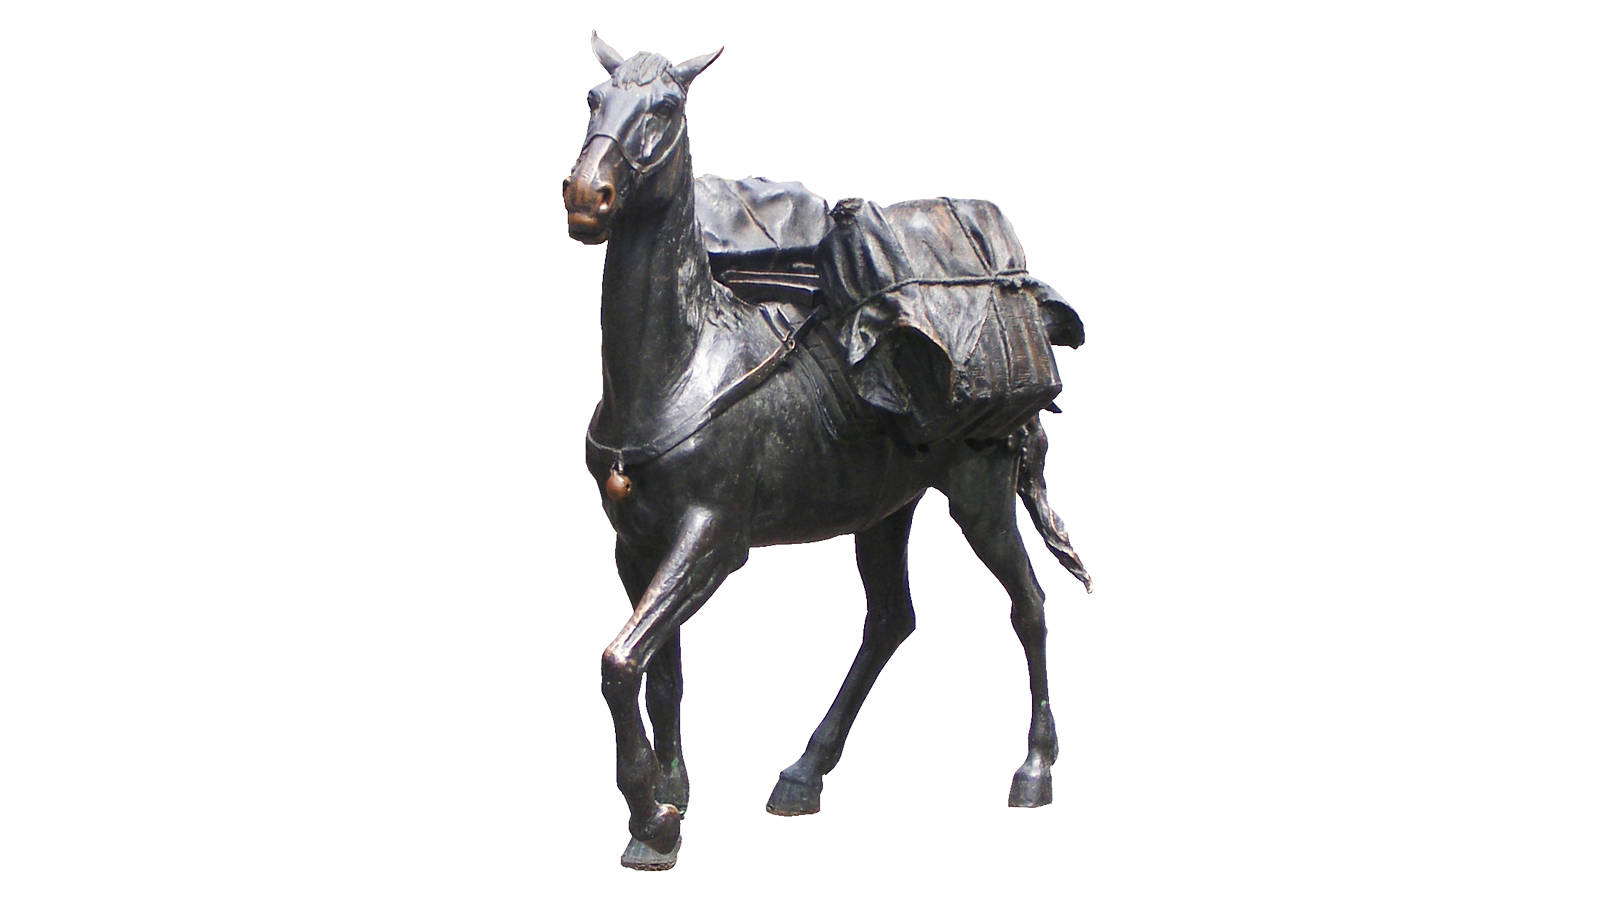 茶马古道主题雕塑再续千年的盛世繁景弘扬马帮背夫精神